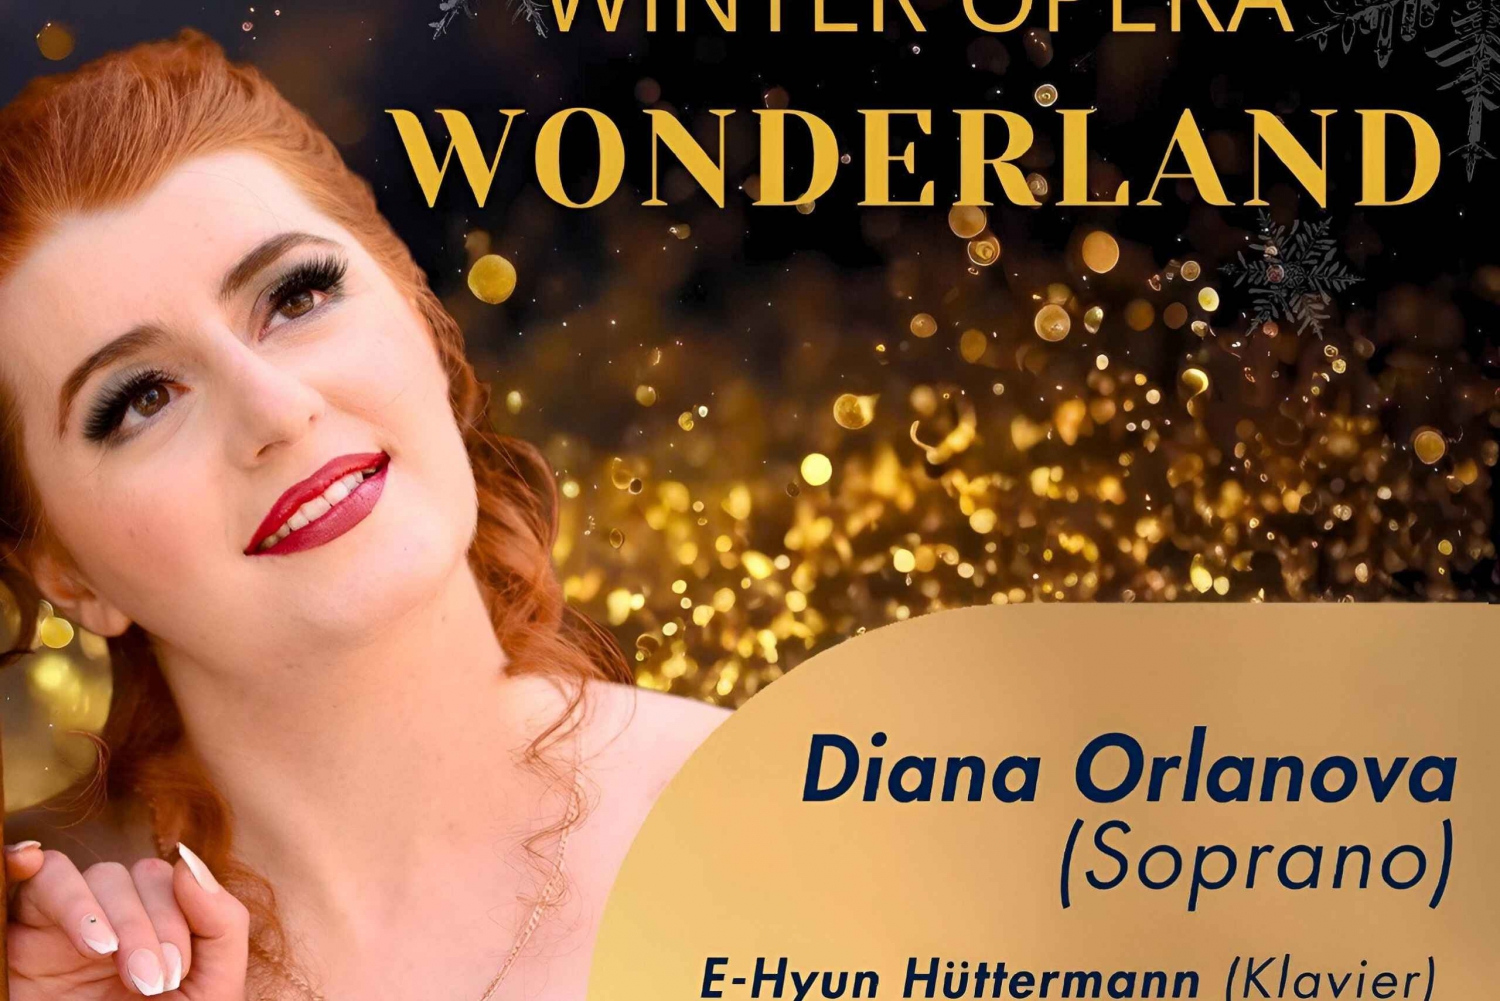 Il paese delle meraviglie dell'opera d'inverno: Concerto lirico tematico a Vienna